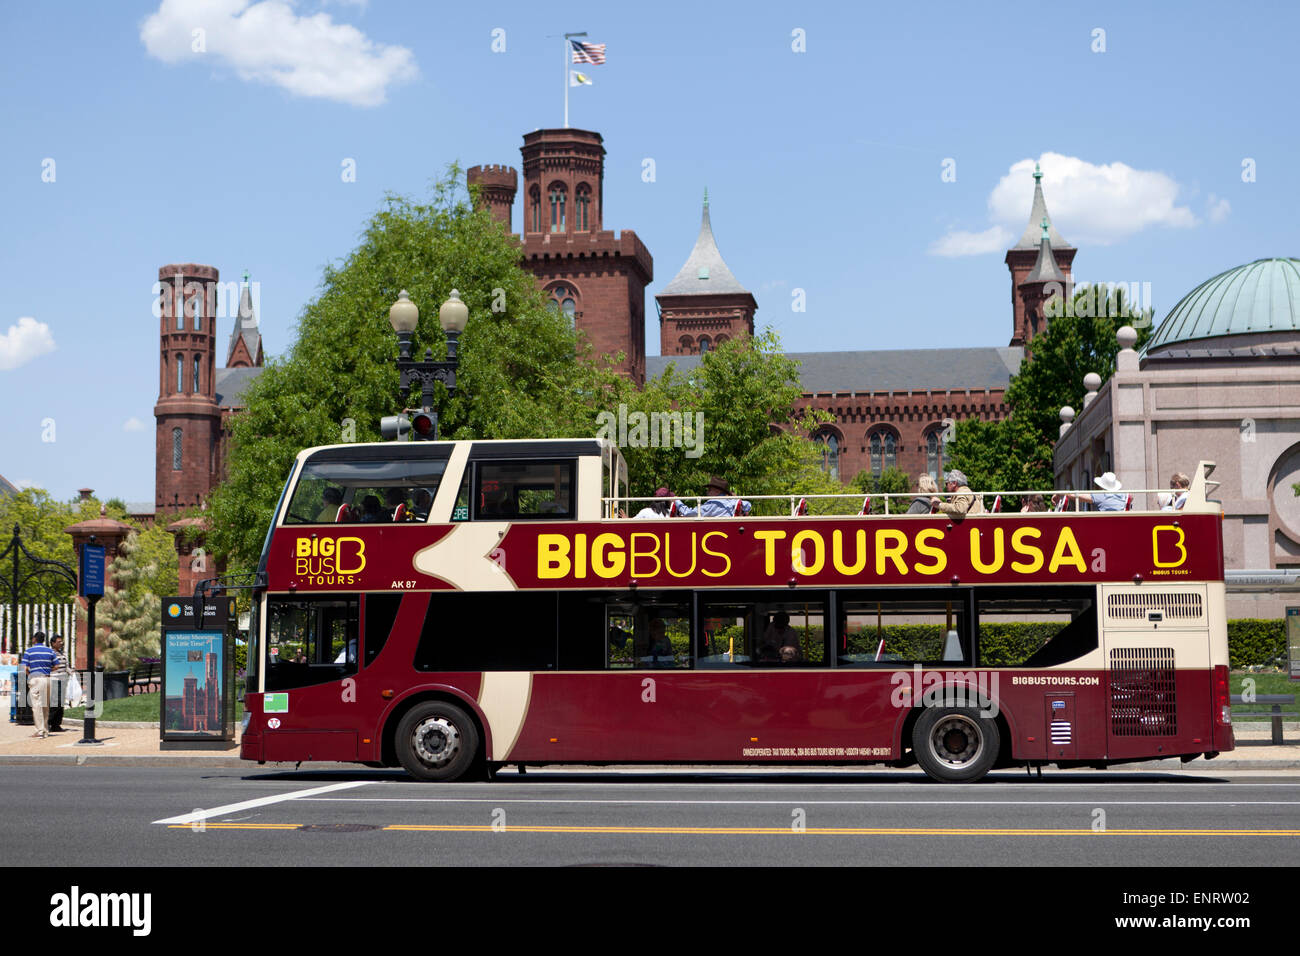 Big Bus double decker tour bus - Washington, DC USA Stock Photo